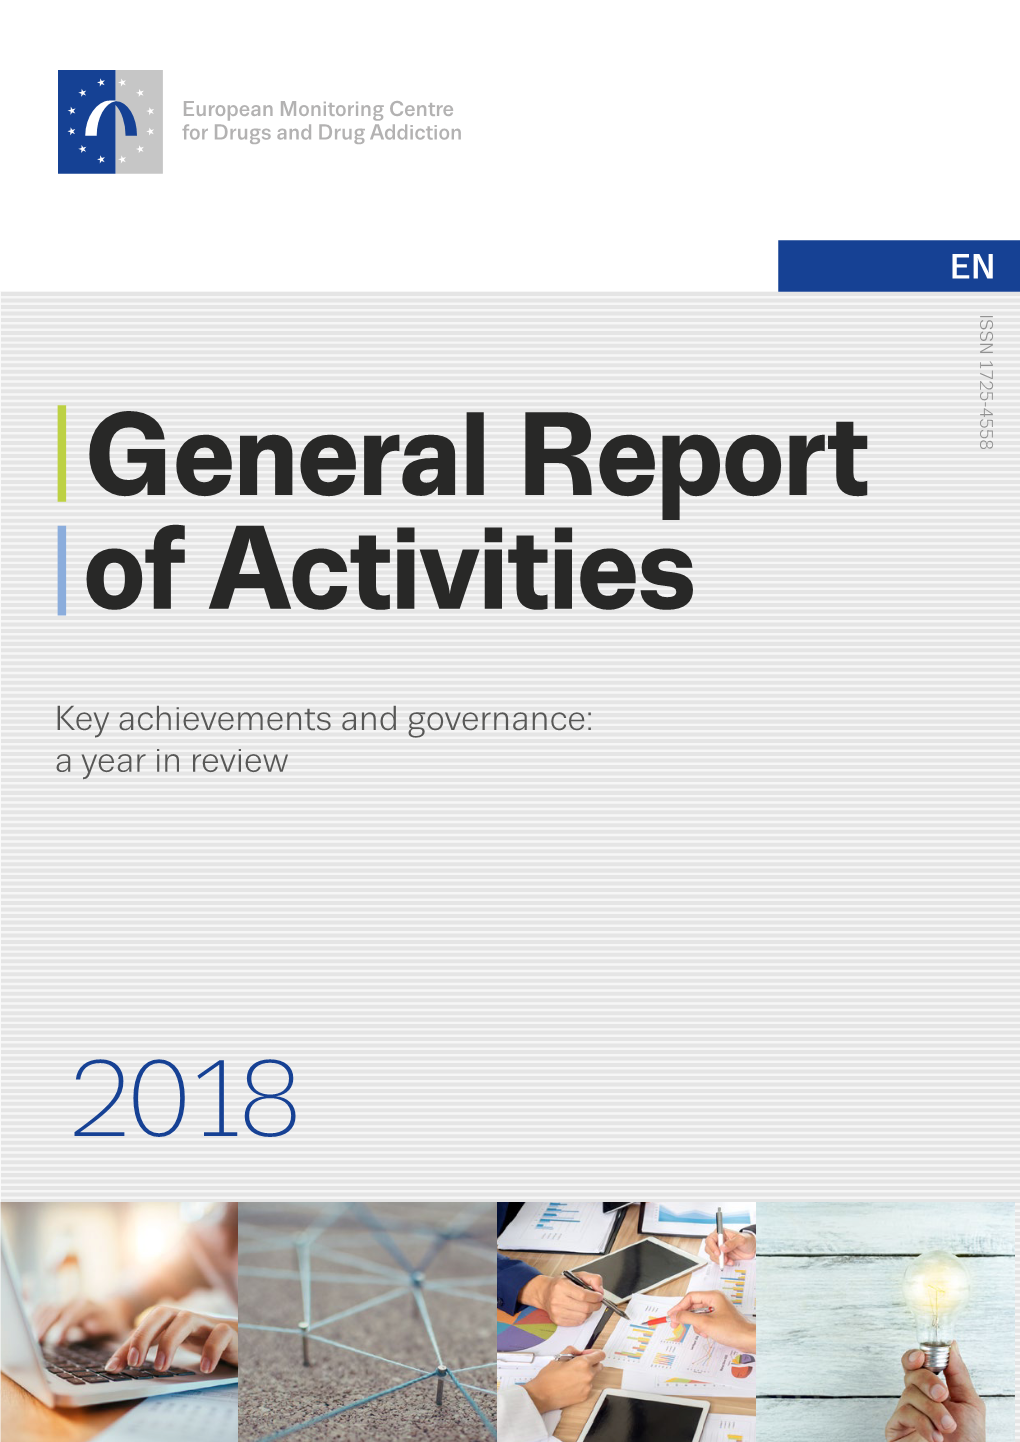 PDF (General Report of Activities 2018)